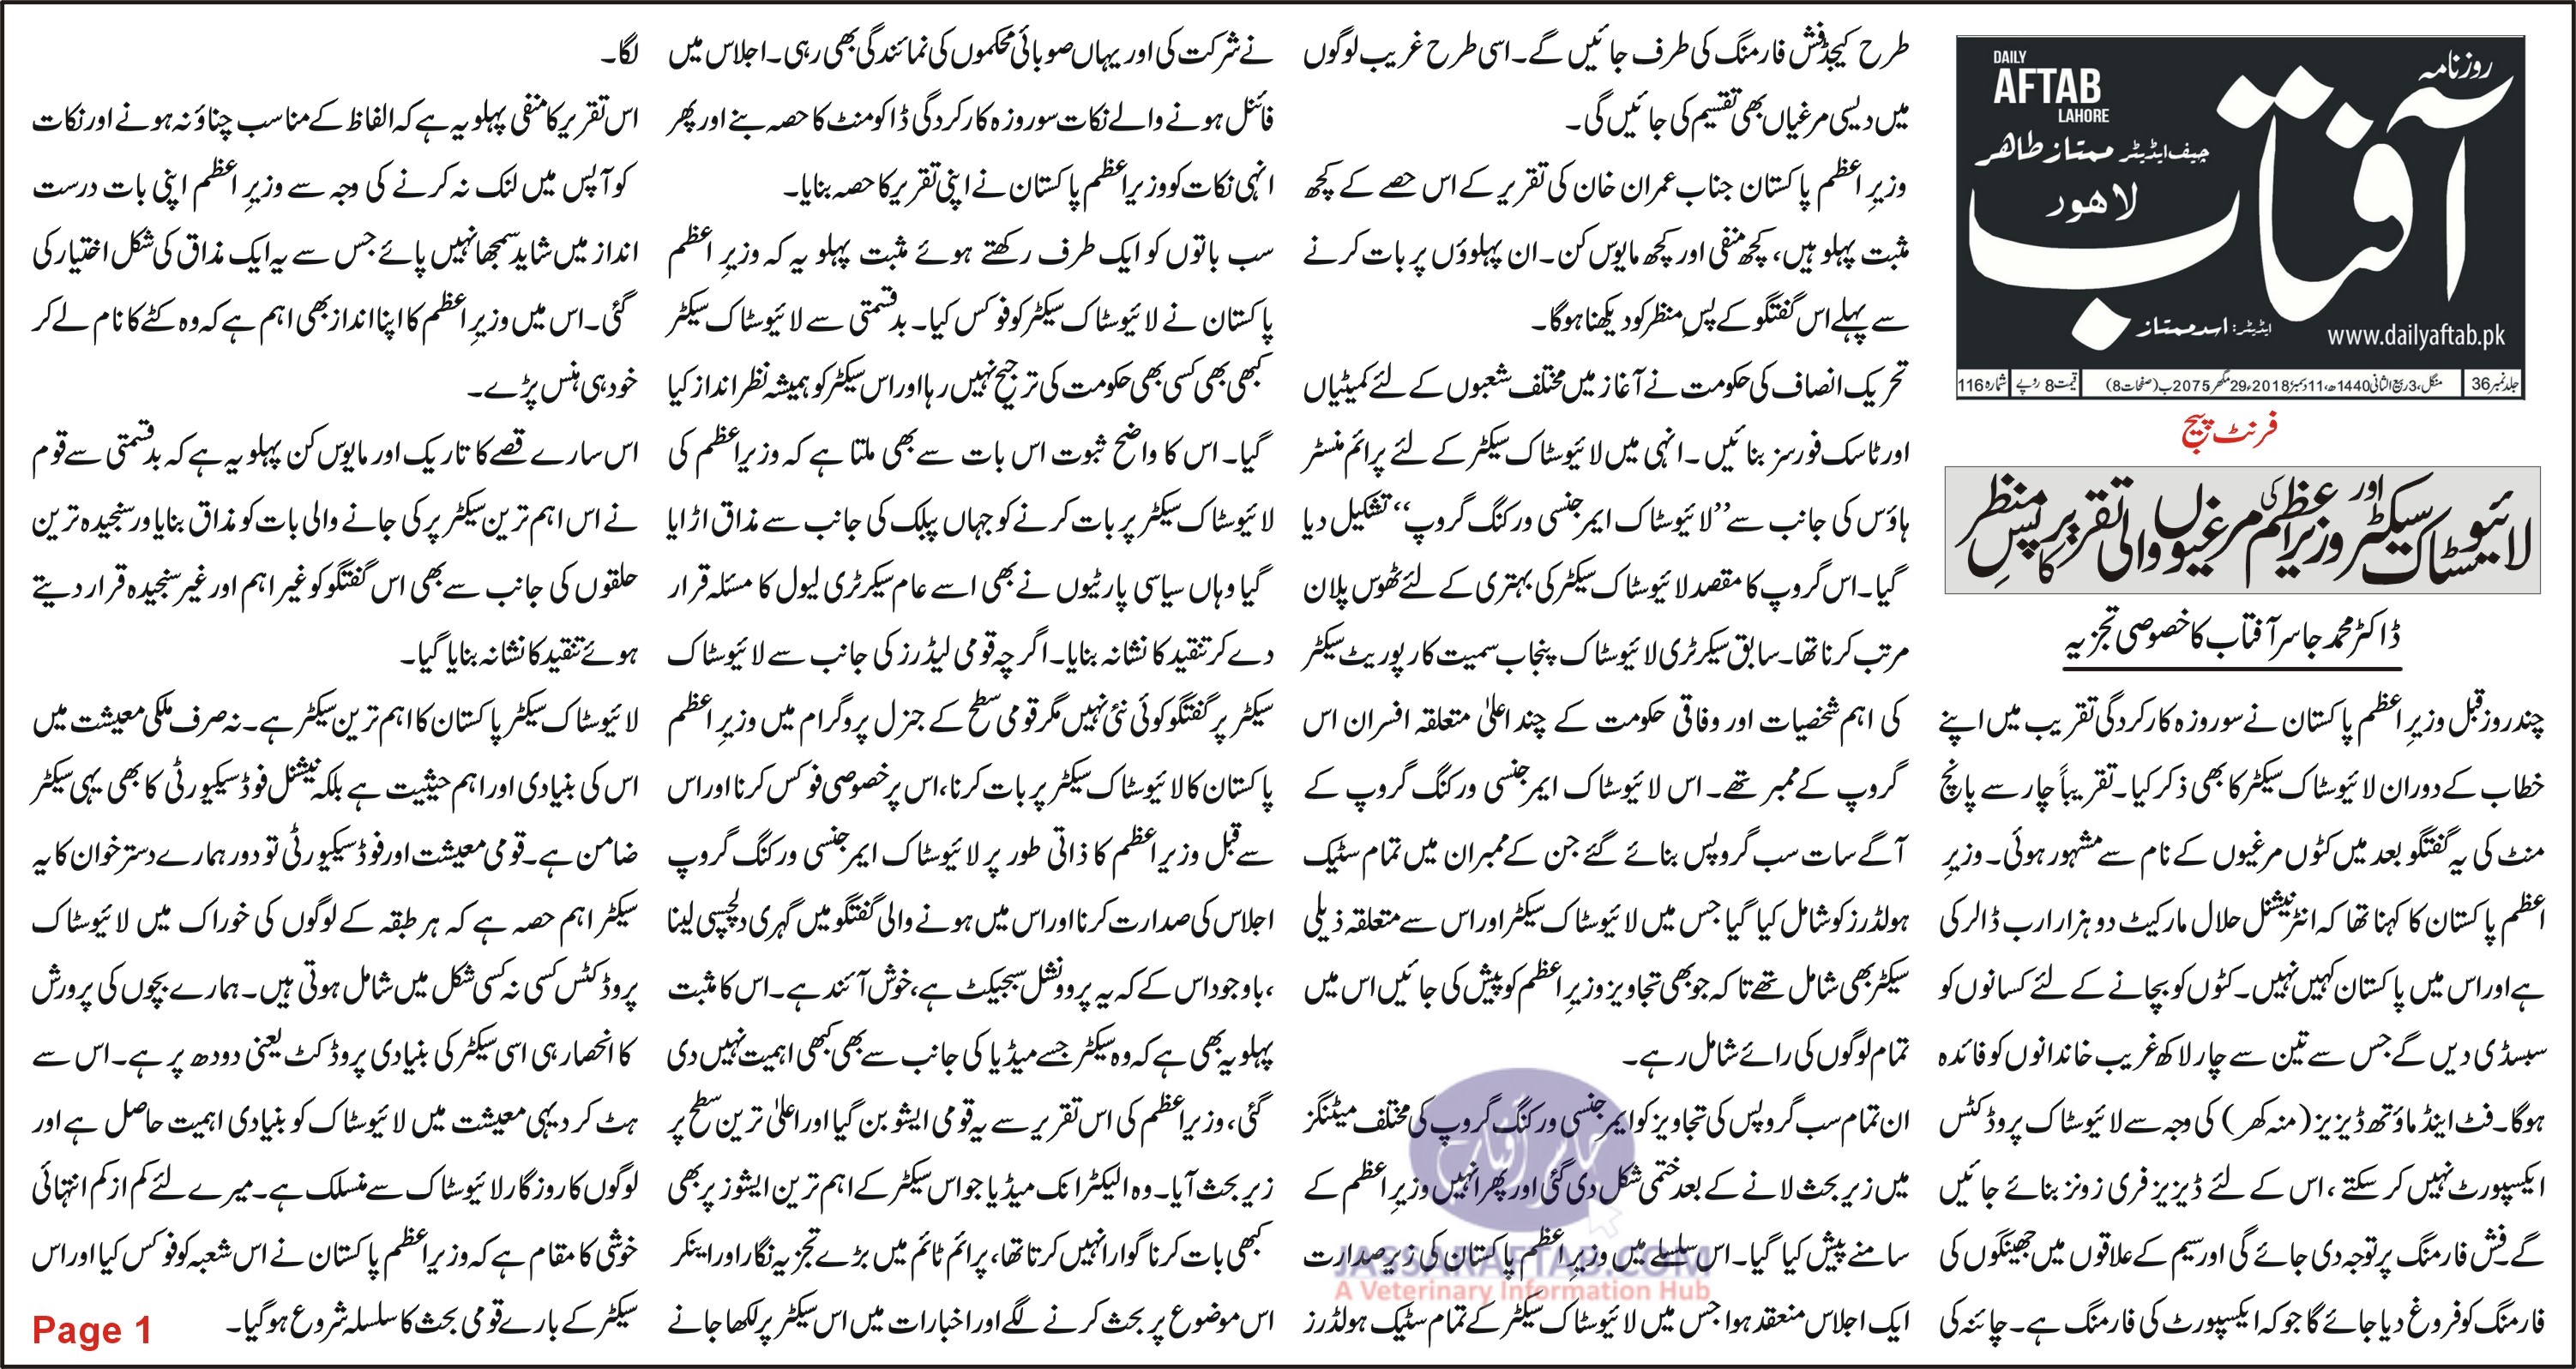 Speech on Livestock and Poultry Speech of Imran kHan